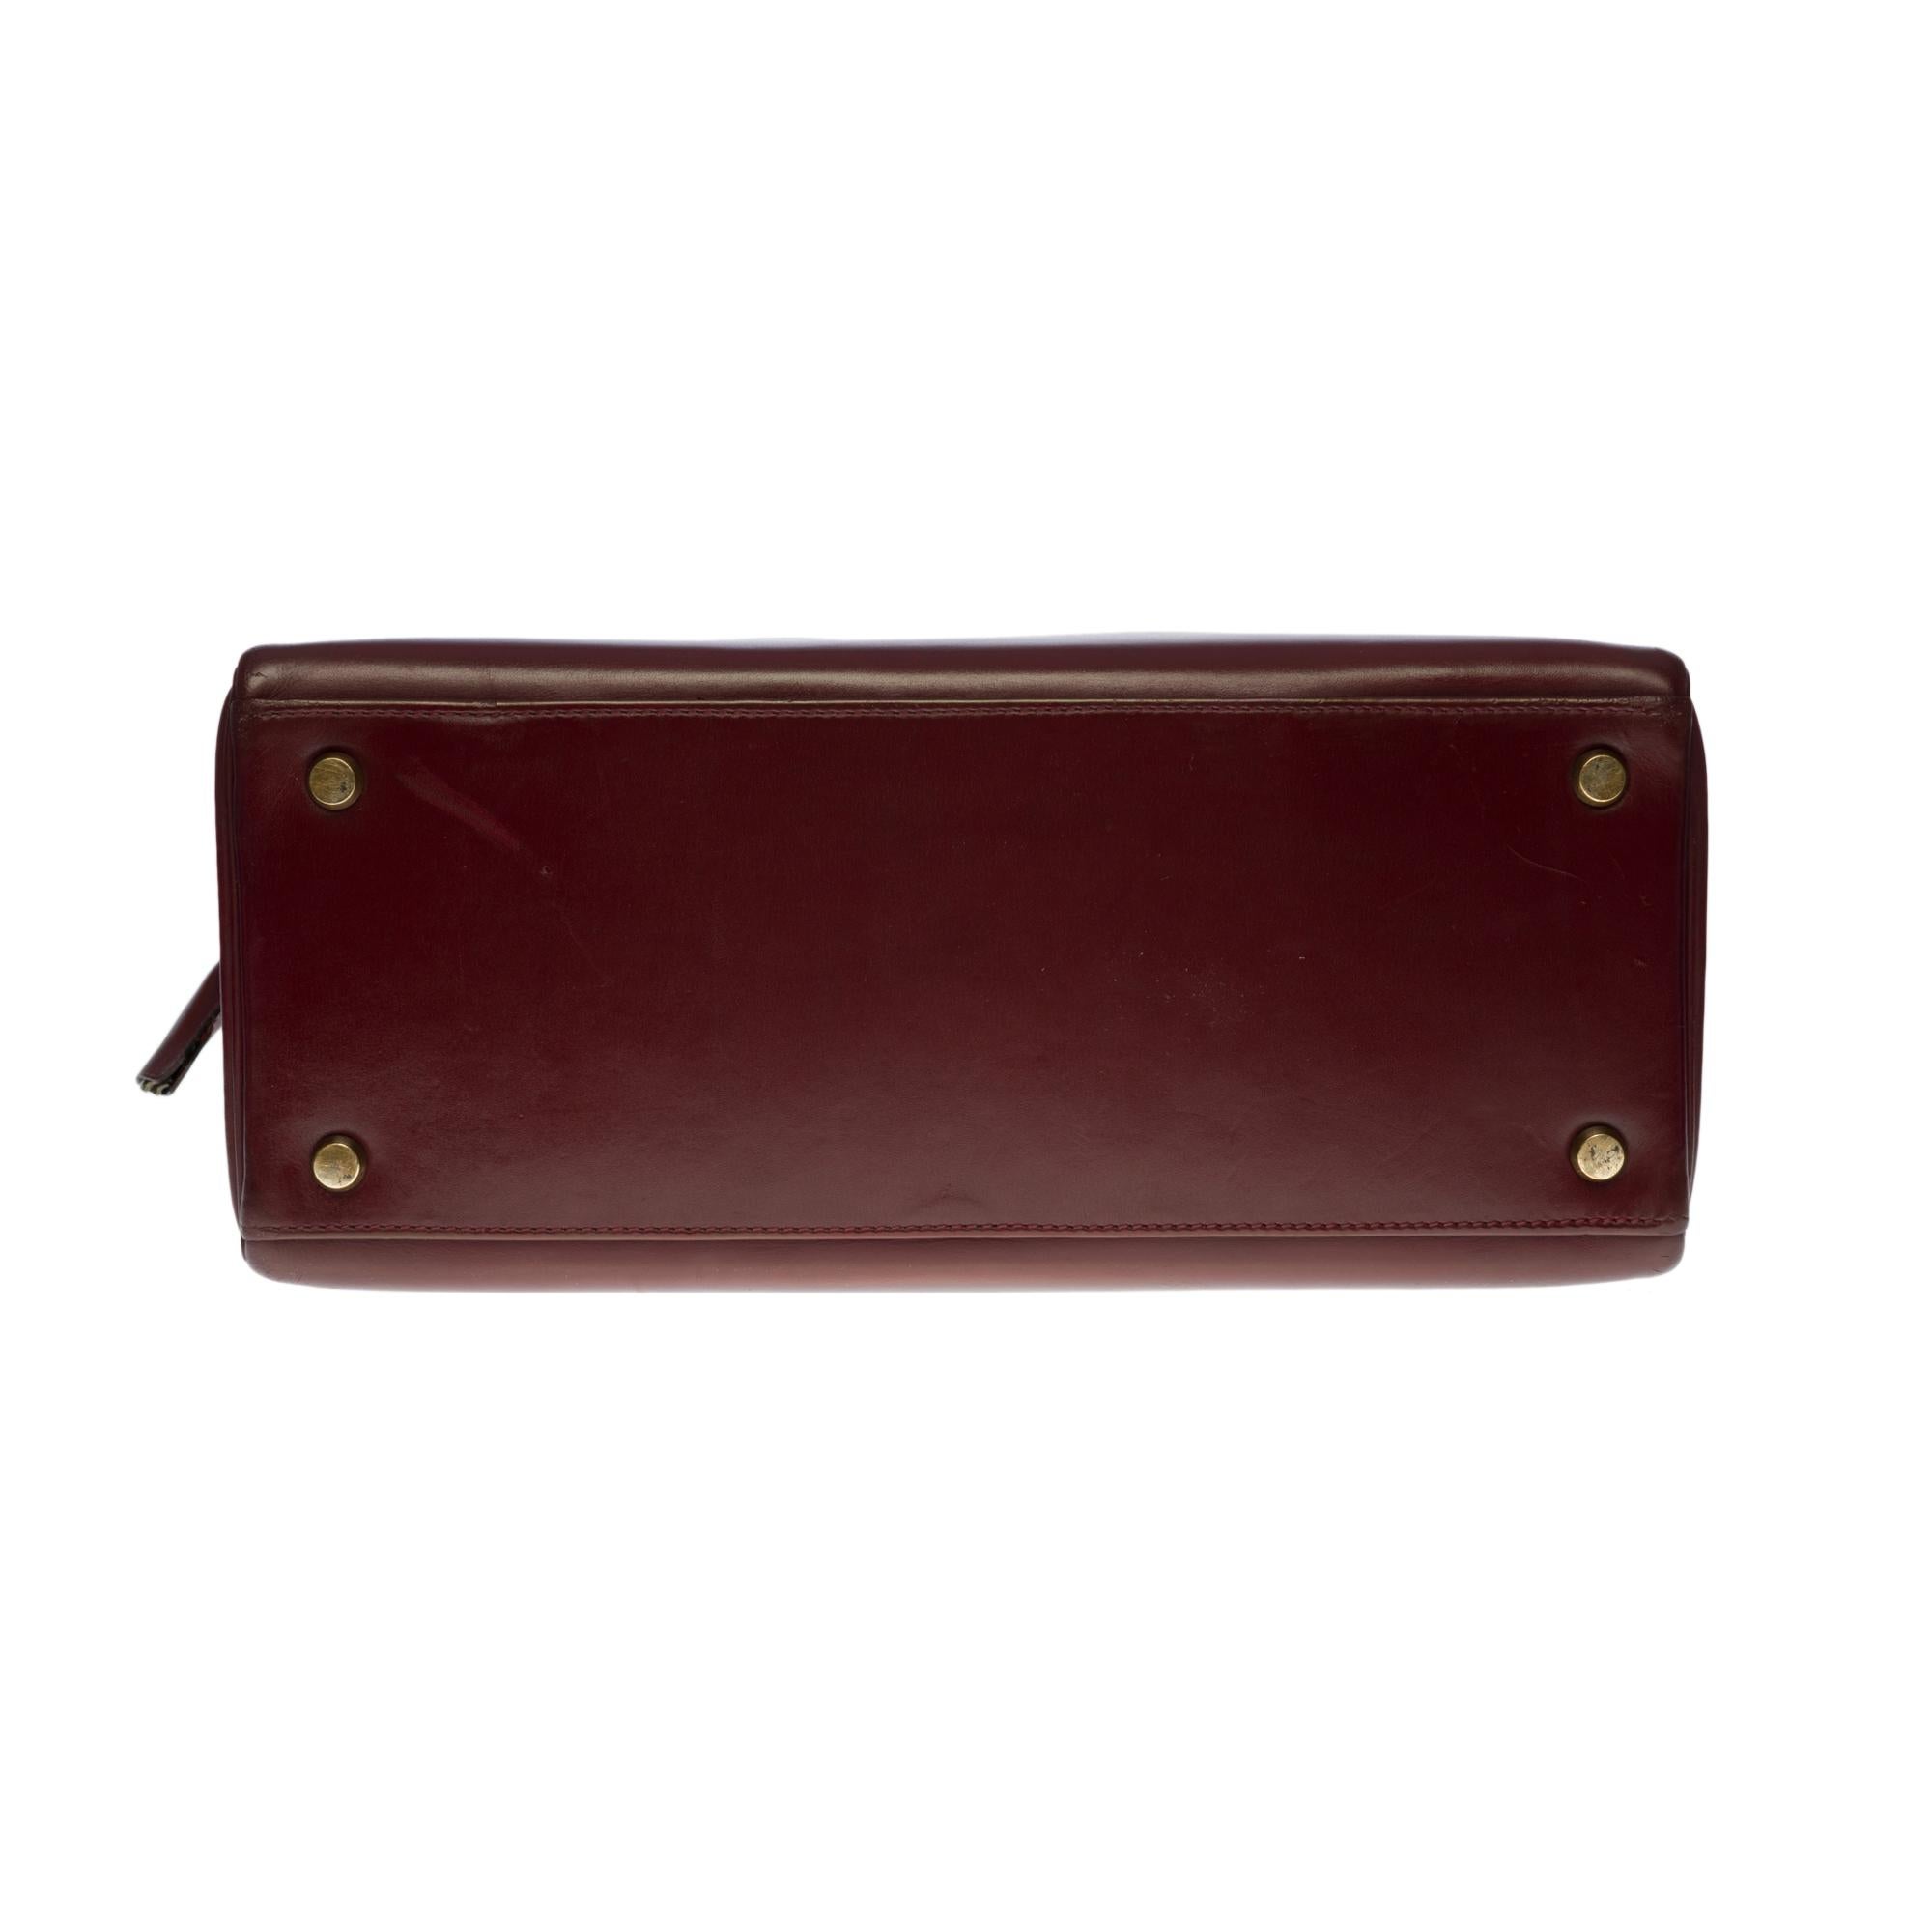 Hermes Kelly 28 retourne handbag strap in Rouge H (Burgundy) box calfskin, GHW 1